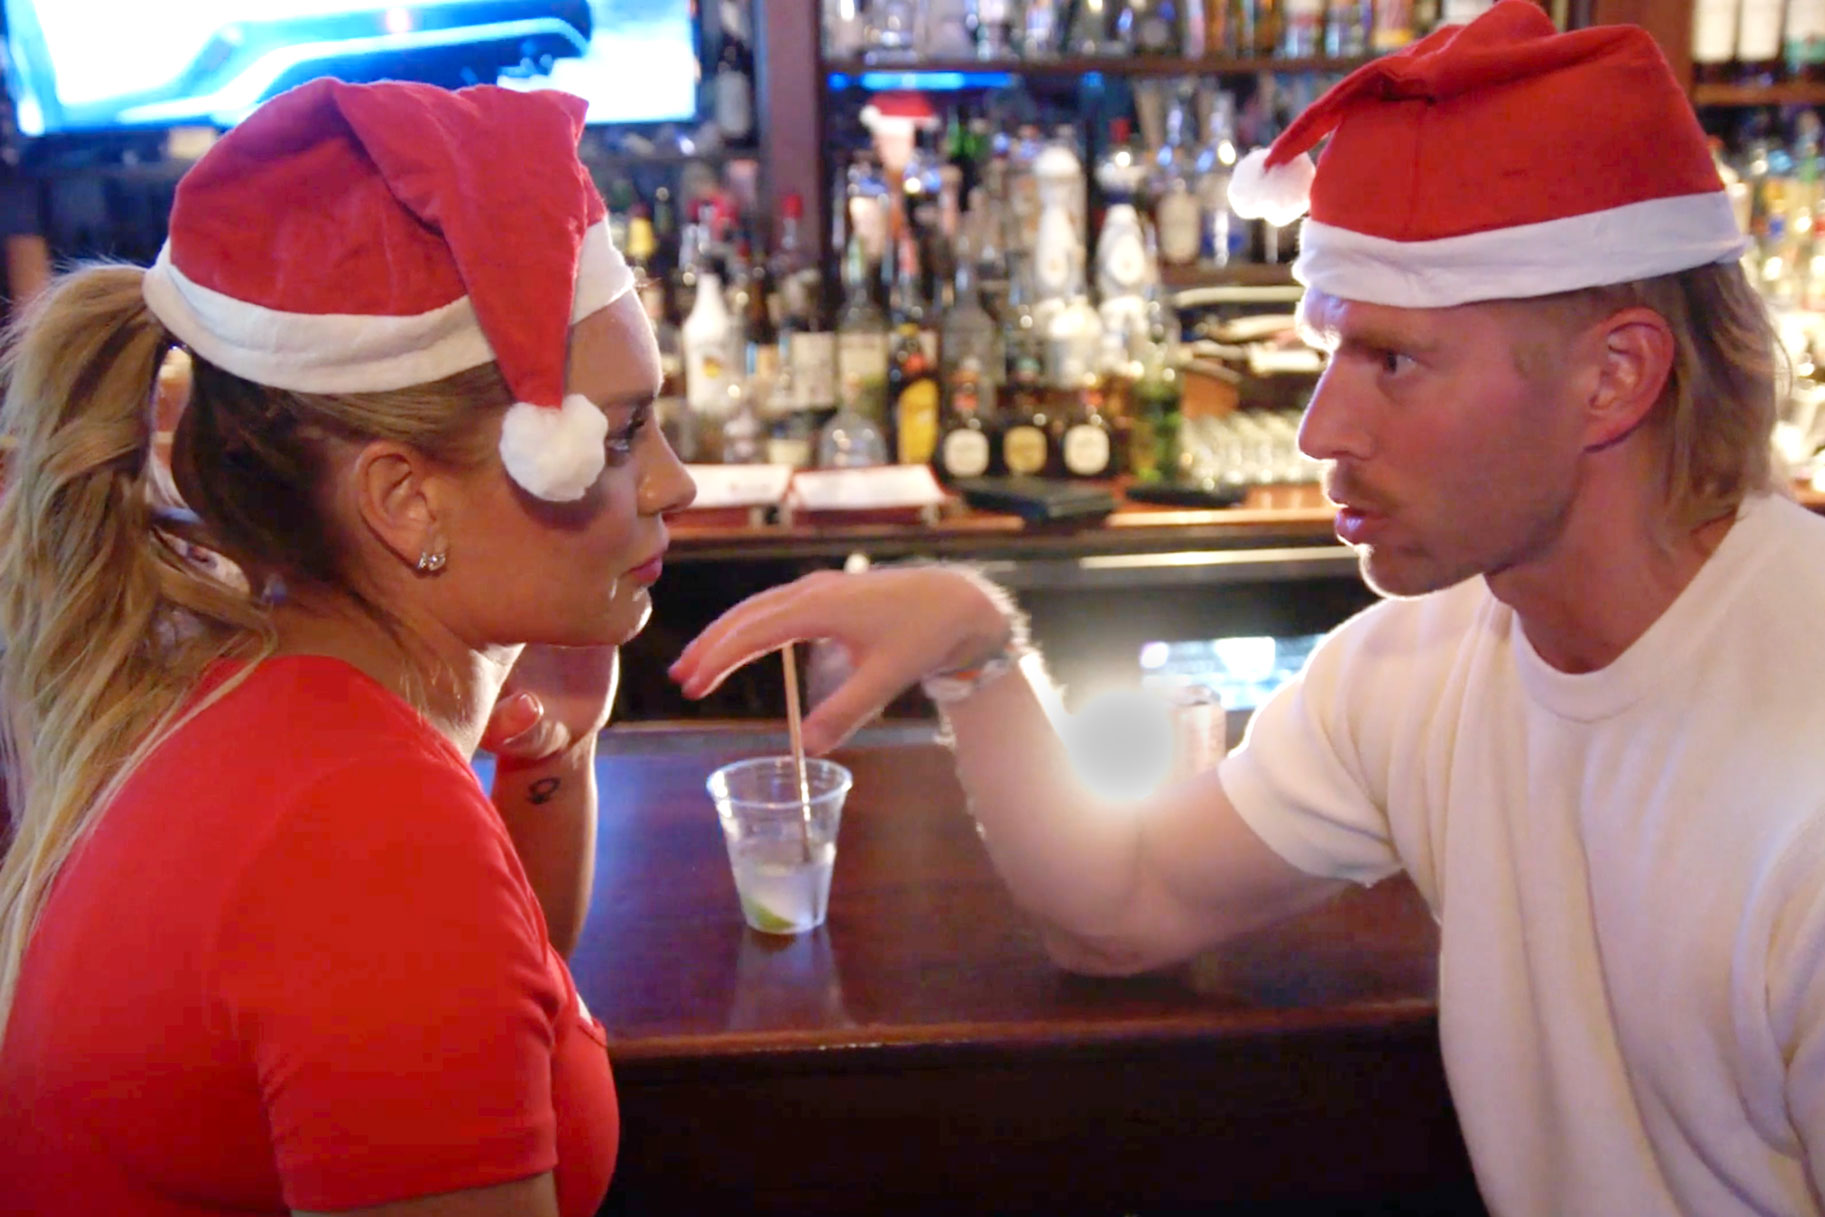 Lindsay Hubbard and Kyle Cooke at a bar wearing santa hats together.